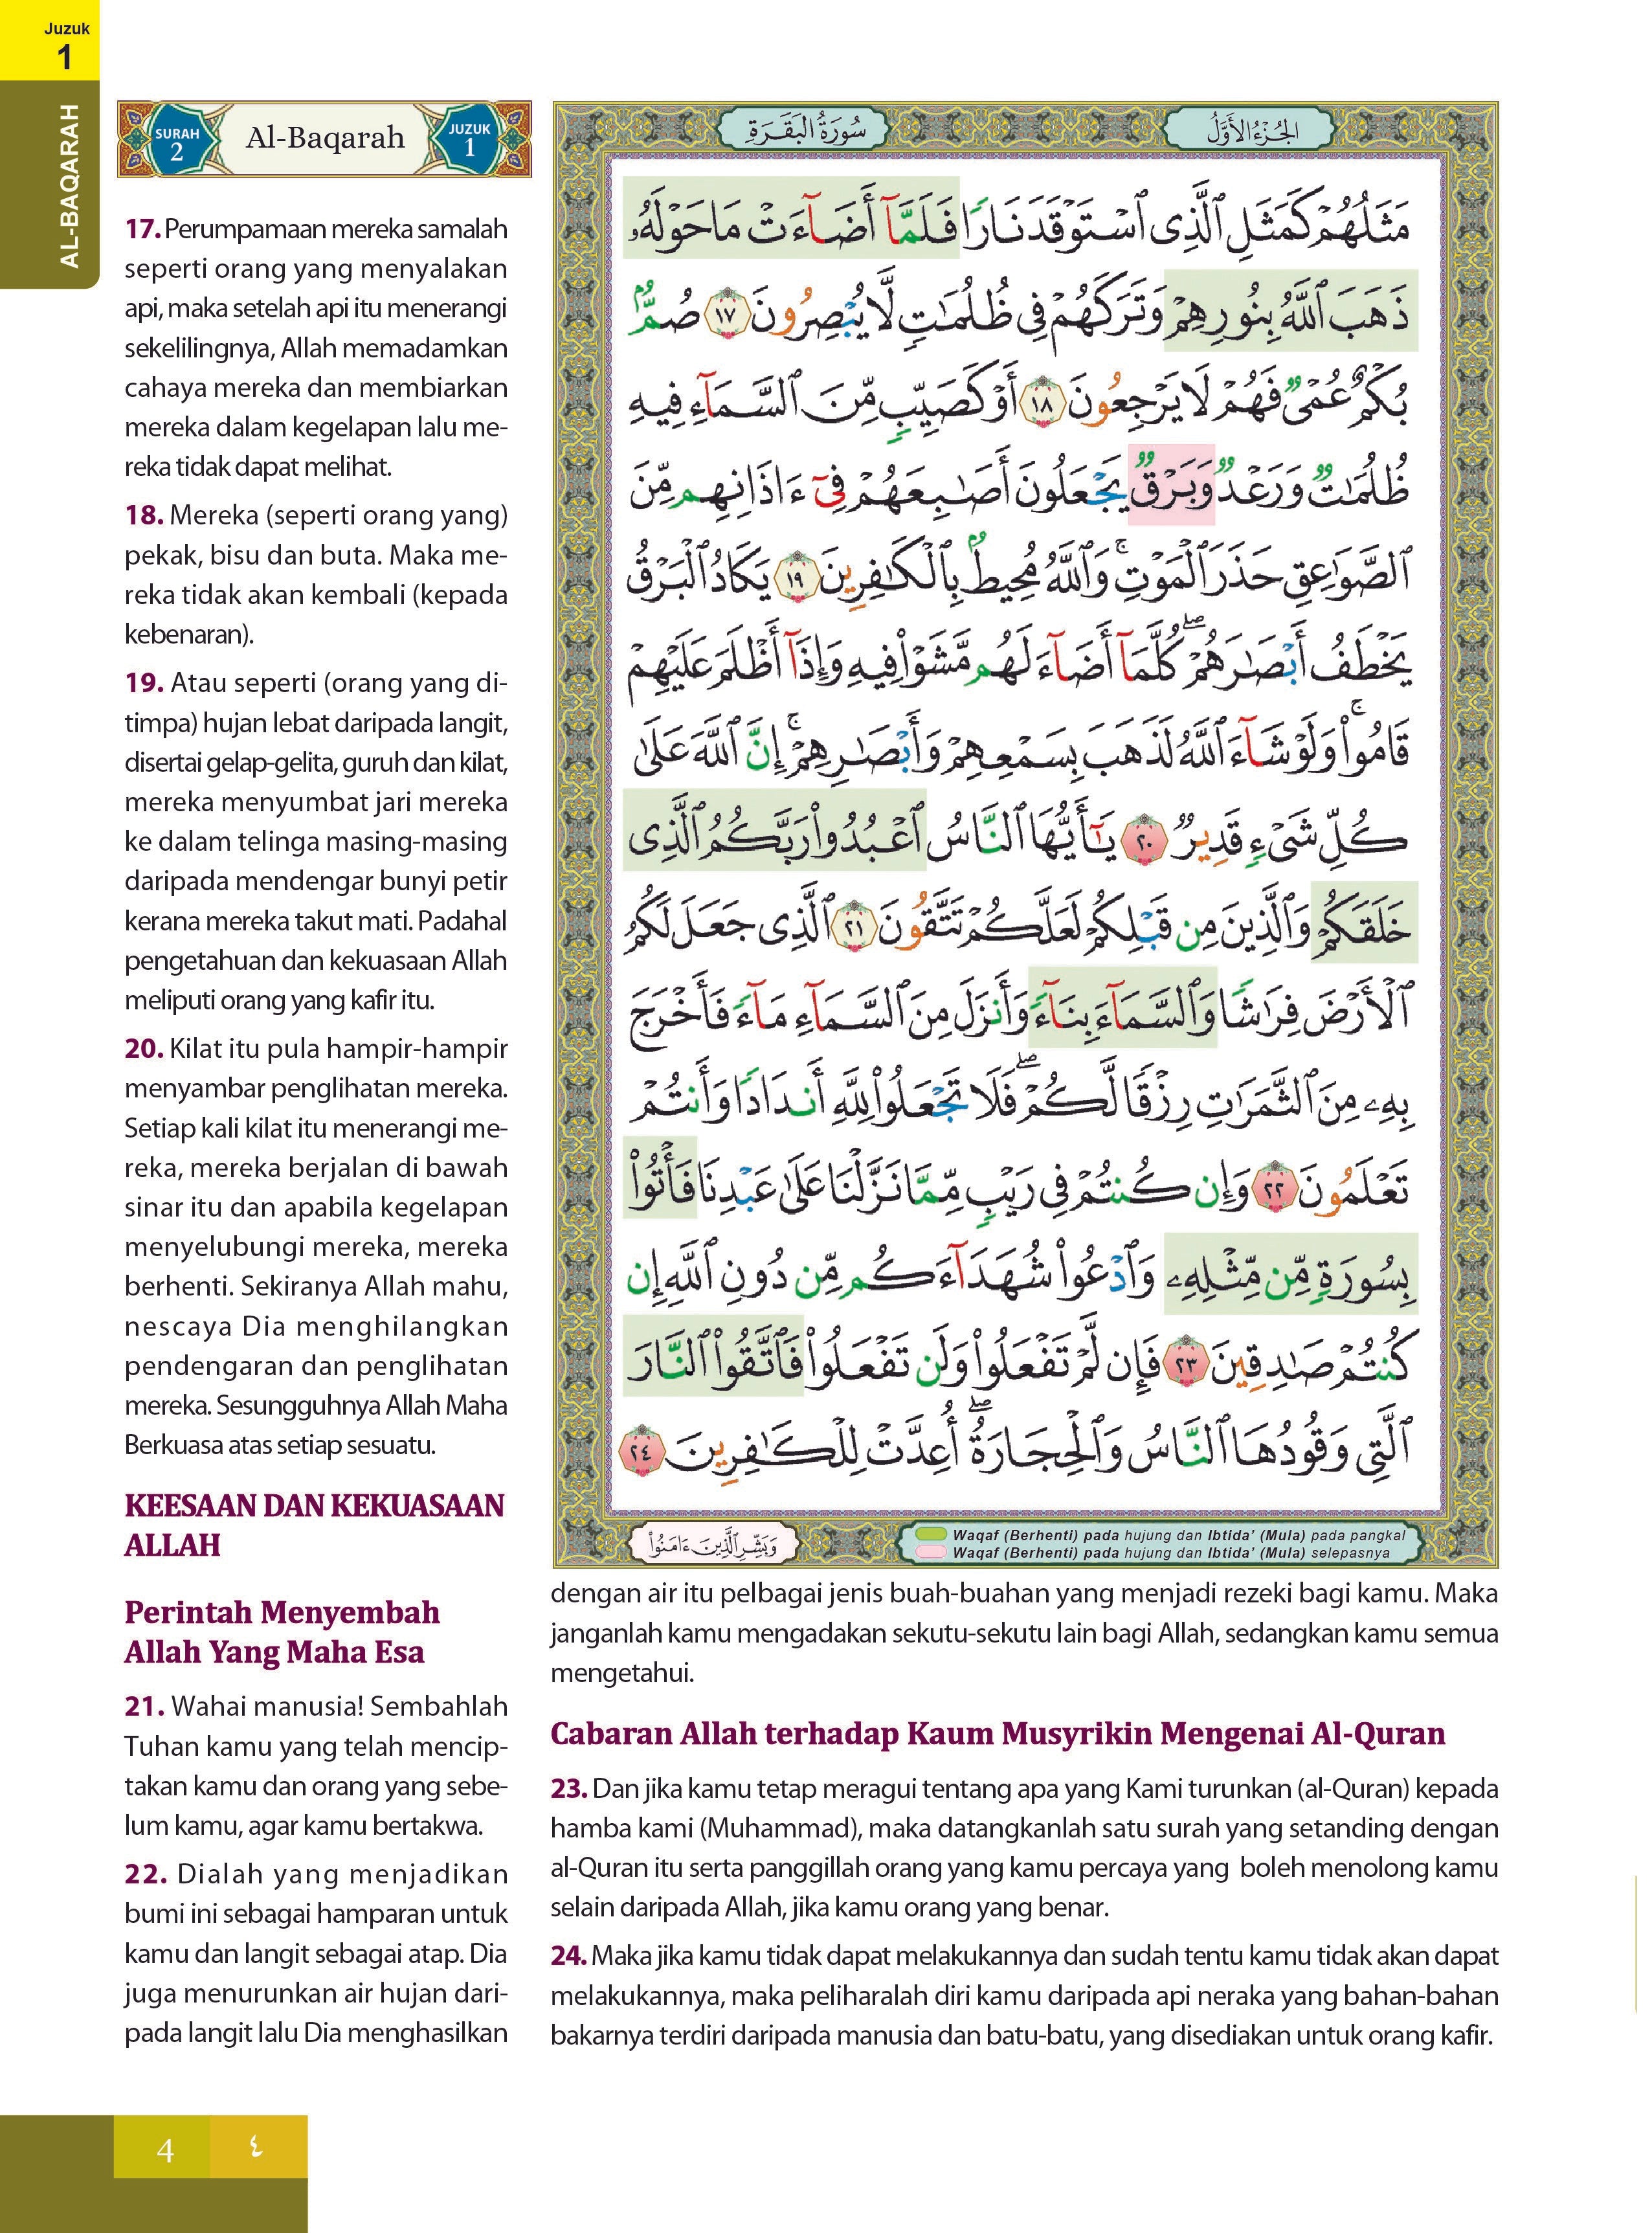 Al-Quran Al-Karim Tajwid & Terjemahan Al-Kamil (Perjuzuk) - (TBAQ1042)